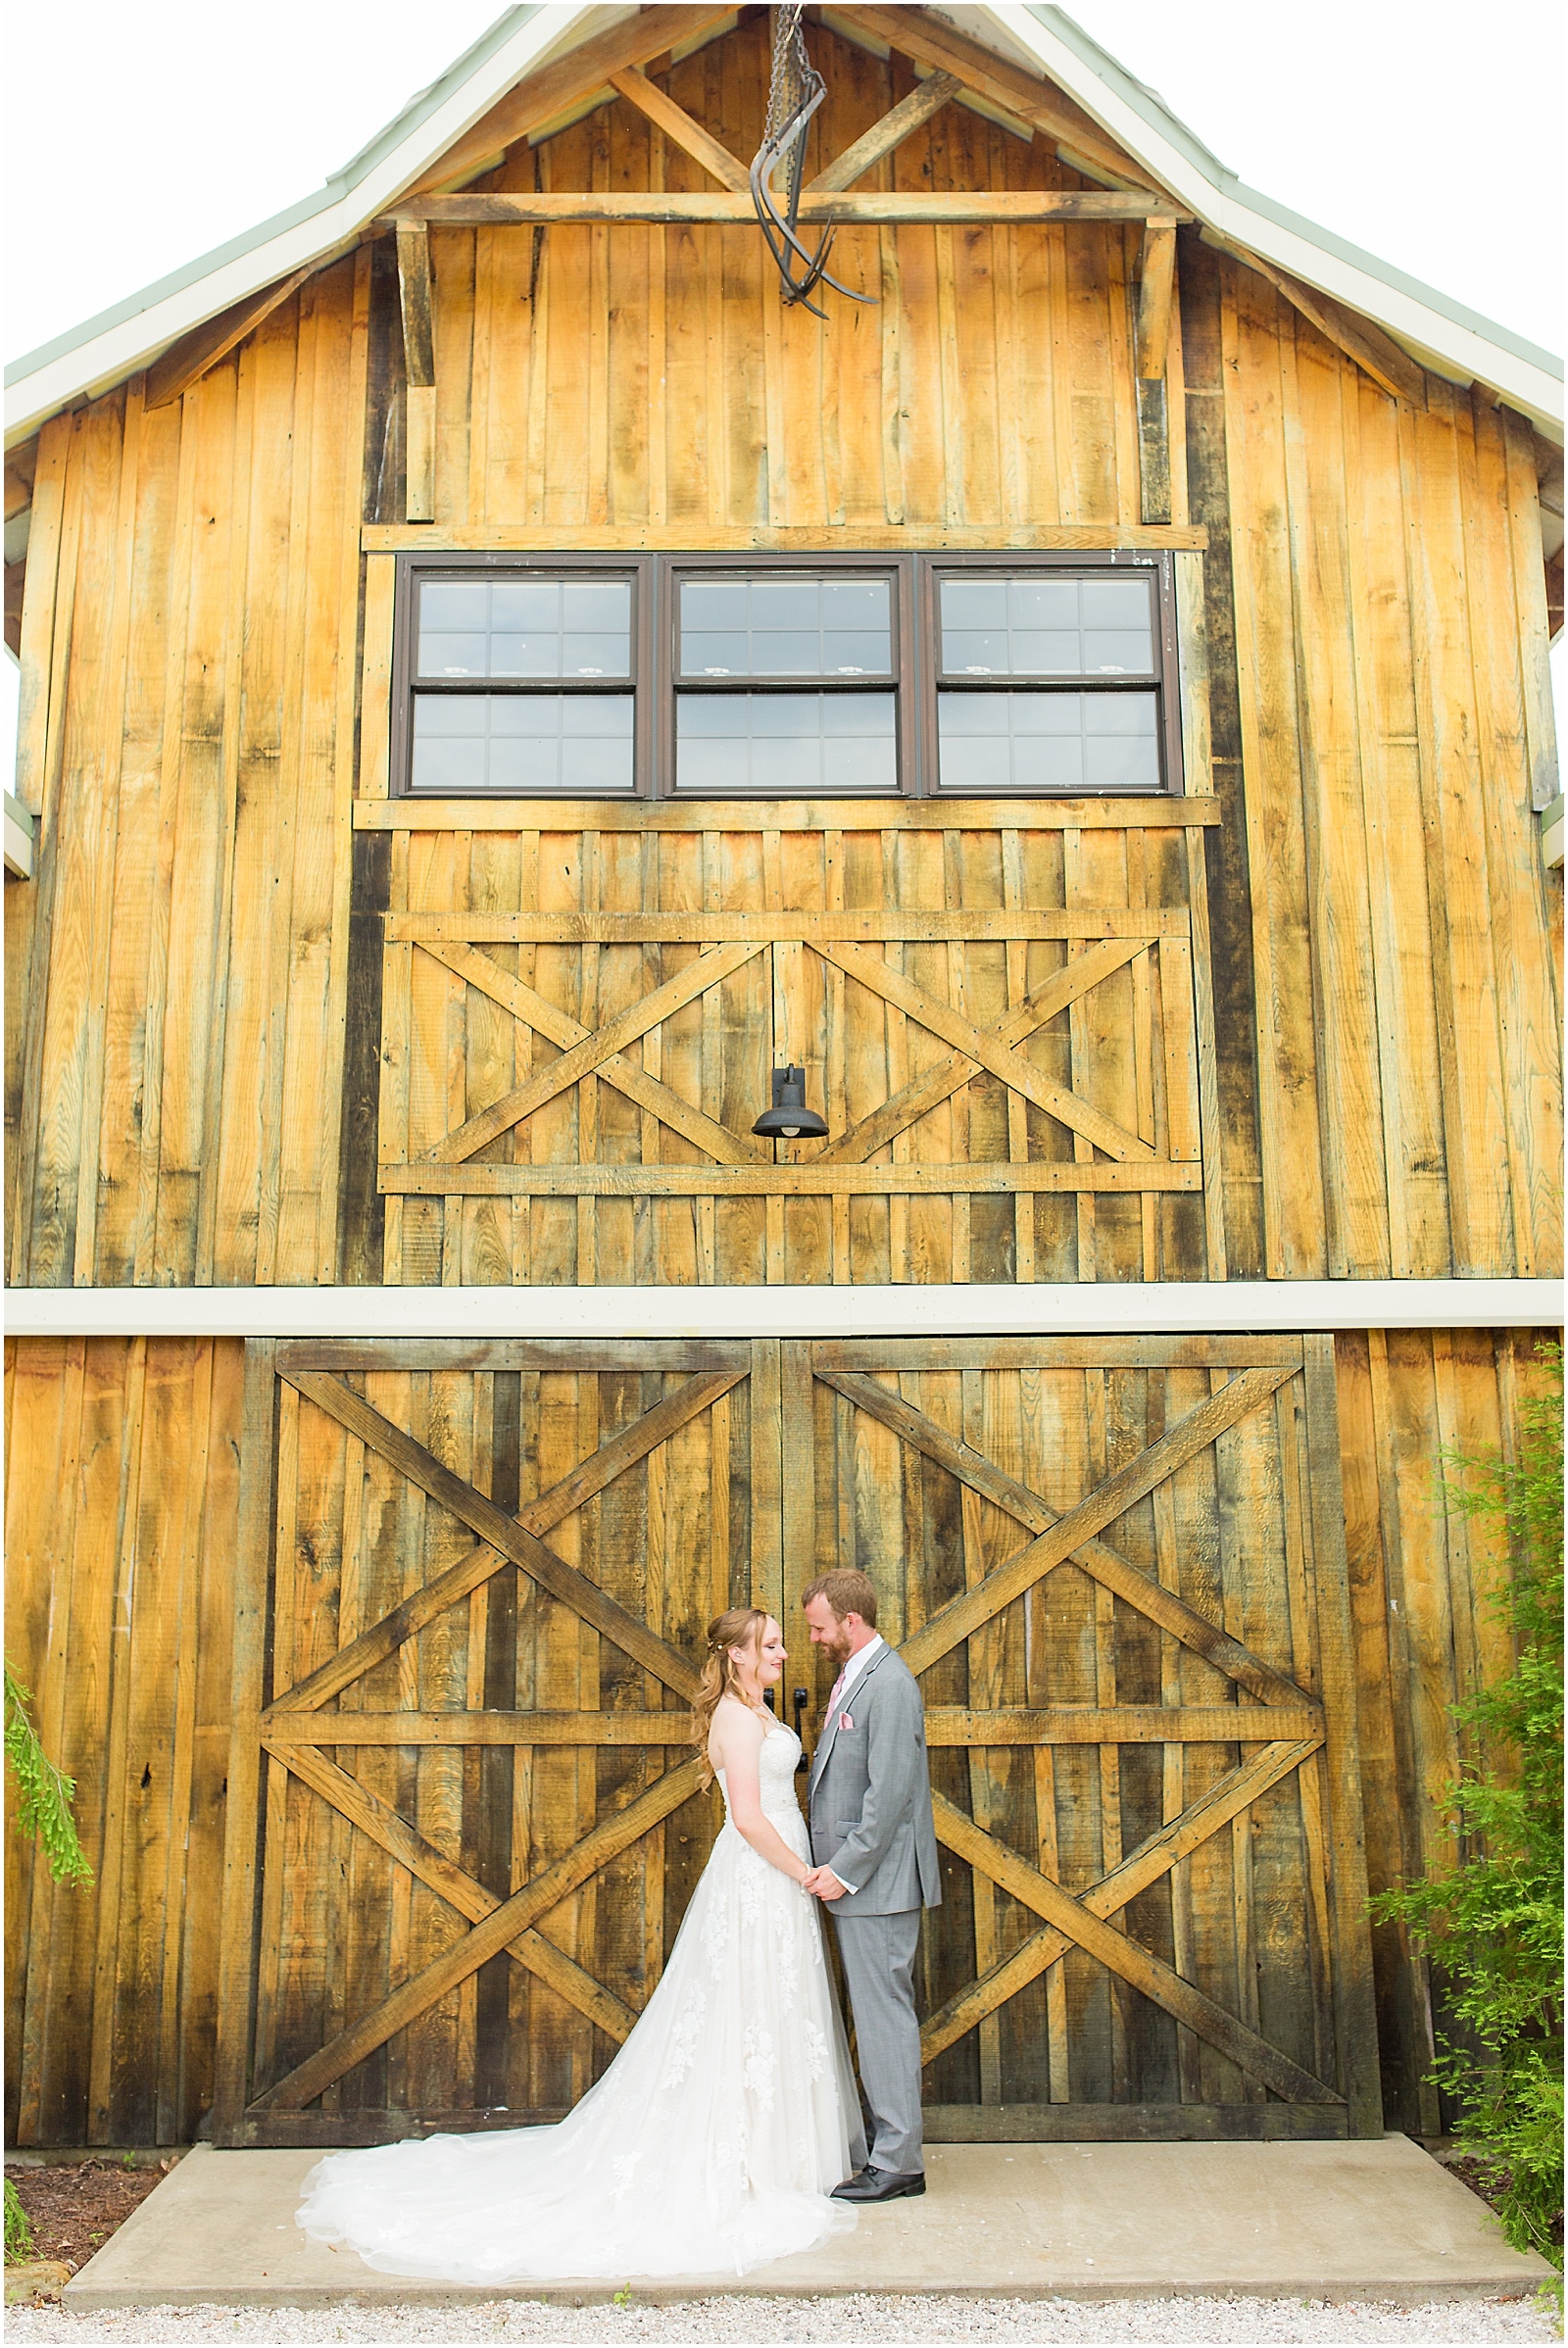 Sierra and Eddie | Wedding BlogBret and Brandie Blog | @bretandbrandie-0056.jpg